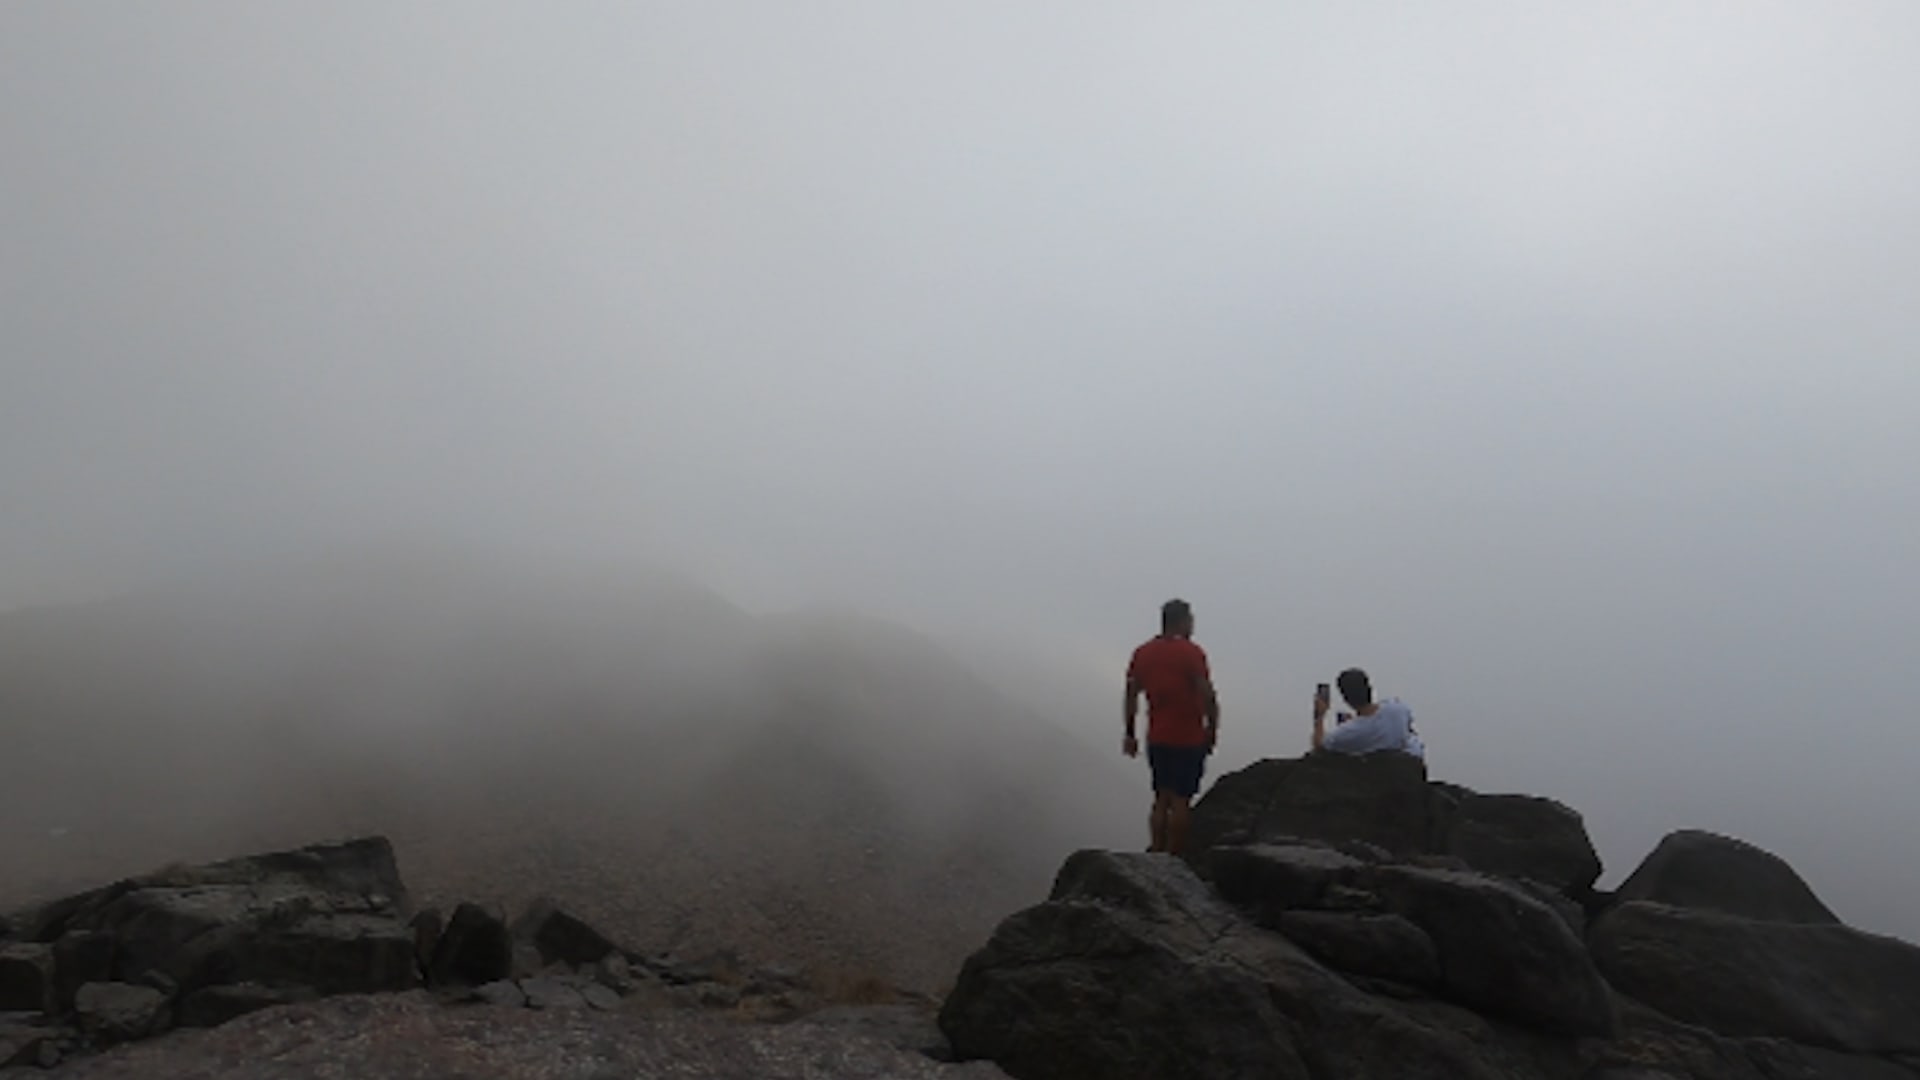 مطارِد السُحب في دولة الإمارات يوثق تجربة "المشي بين الغيوم"